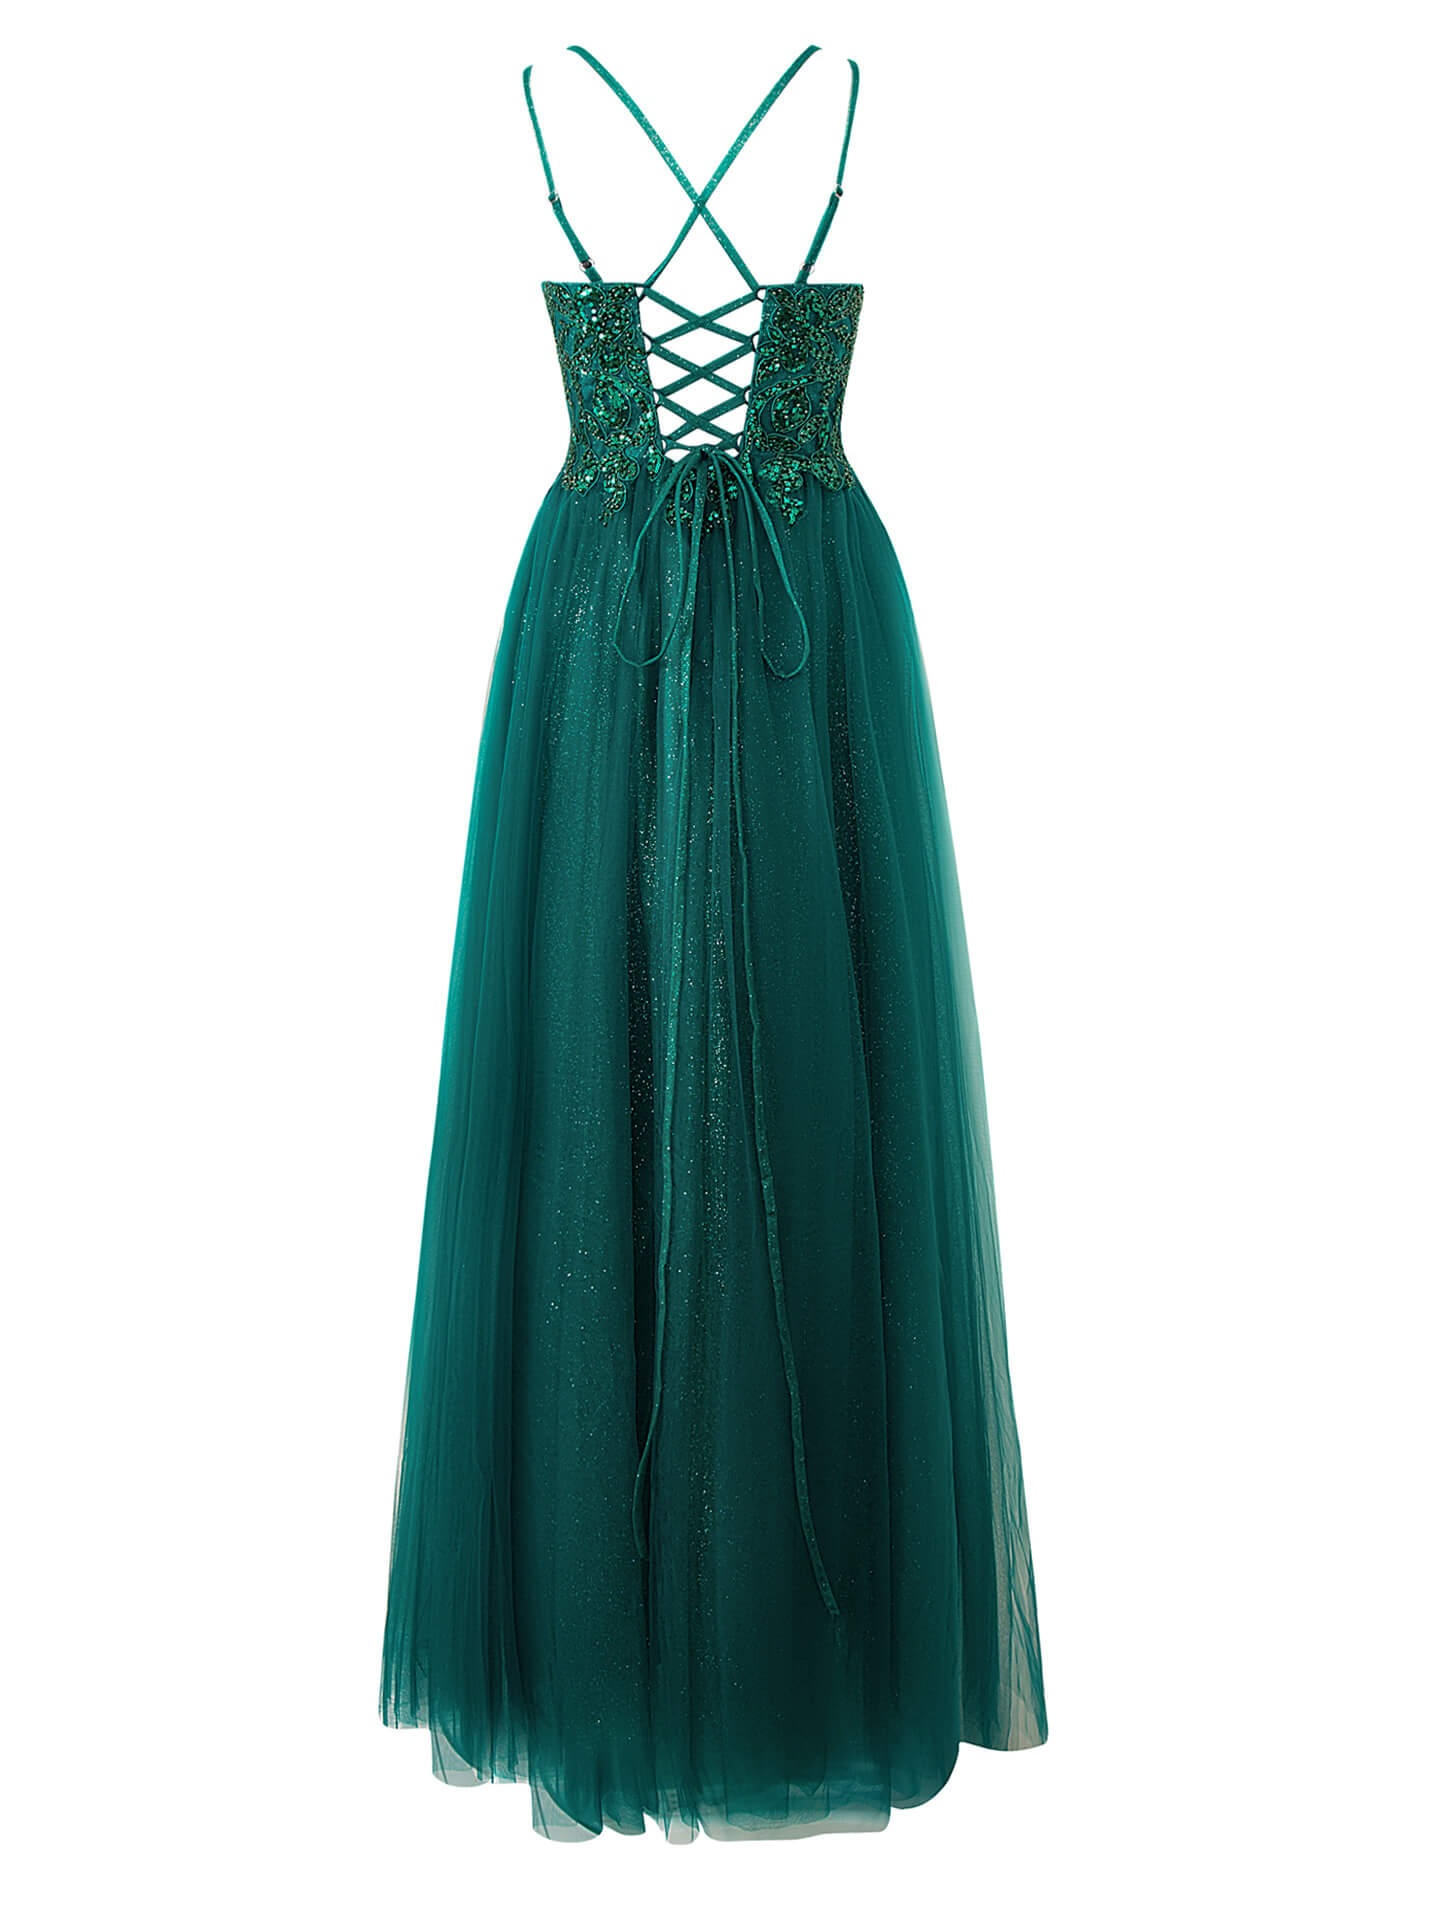 Emily Navy Blue | A-line Floor Length Glitter Tulle Prom Dress